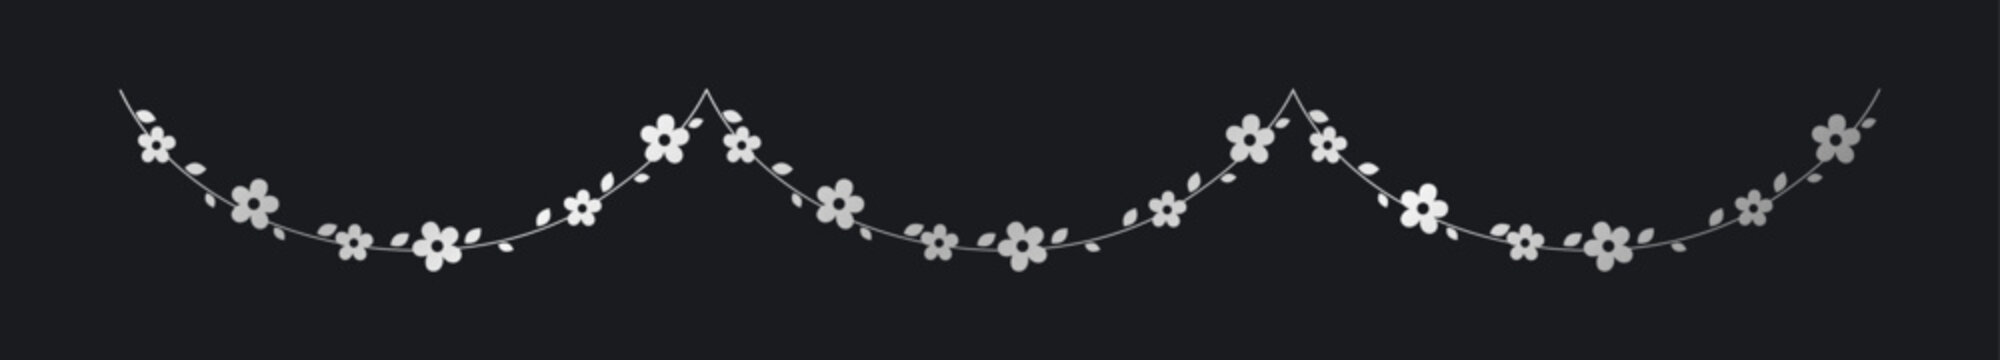 Silver hanging flower garland vector illustration. Simple gold floral botanical design elements for spring.